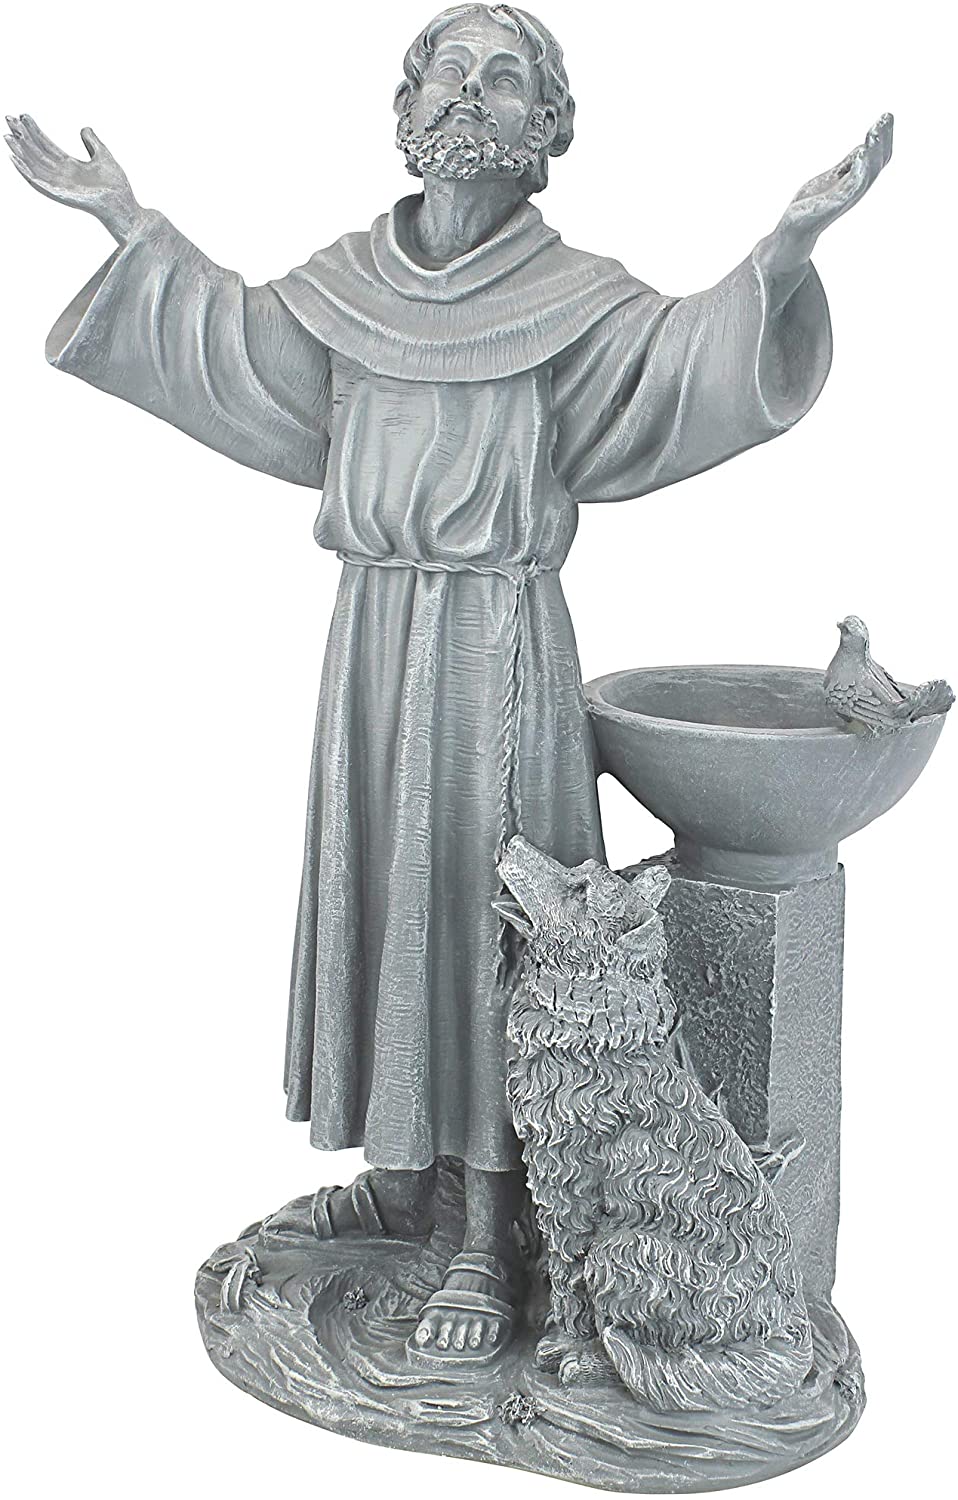 Blessing Blessing Religious Garden Sculpture